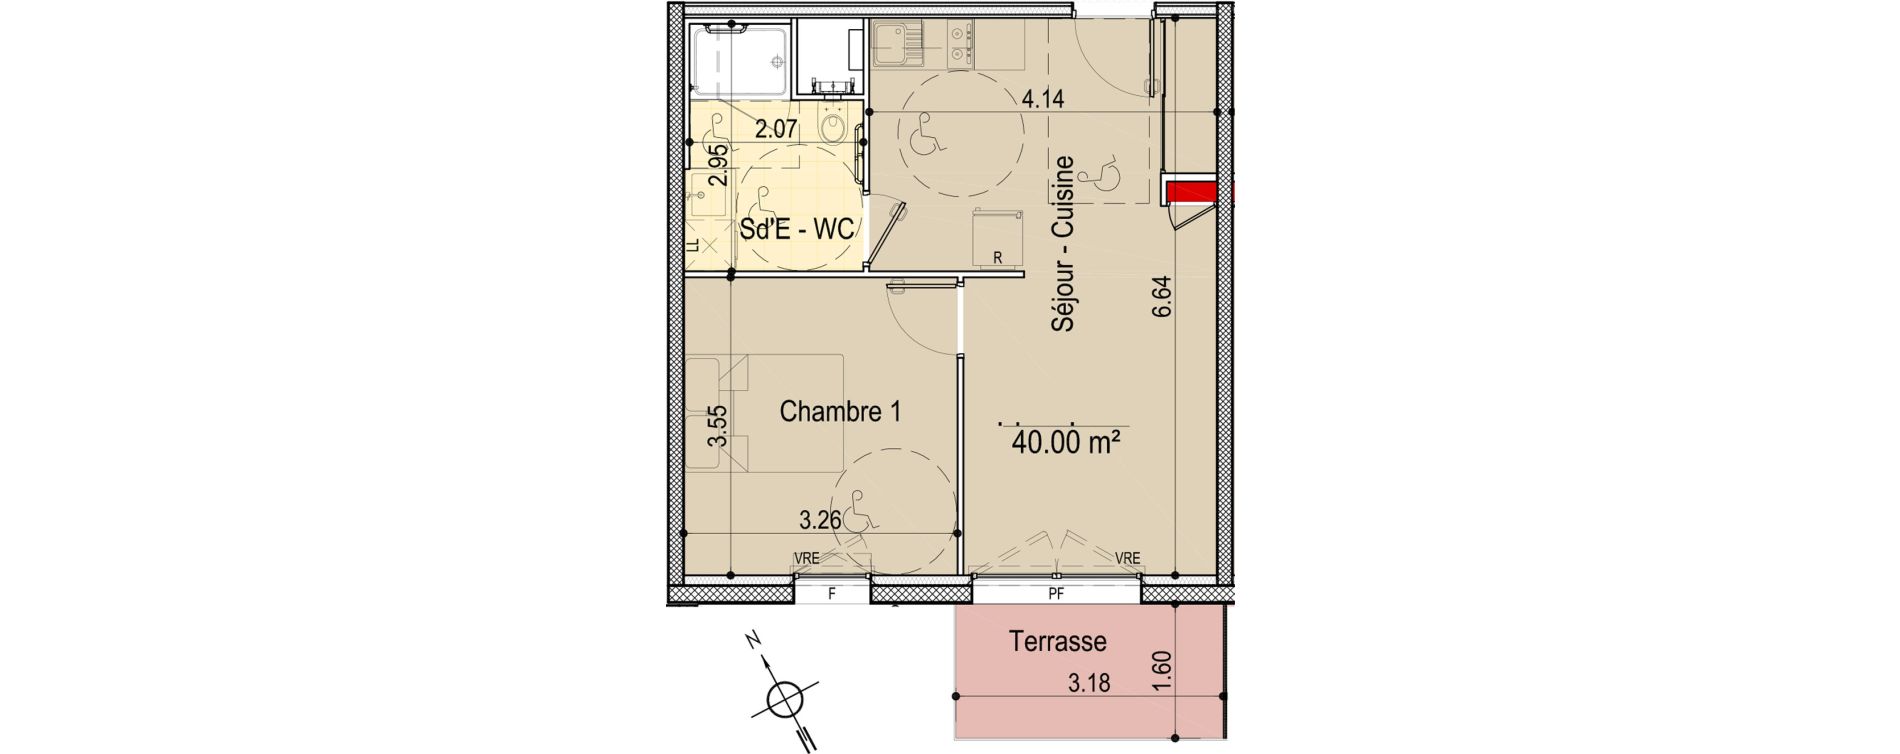 Appartement T2 de 40,00 m2 aux Sables-D'Olonne Le chateau d olonne